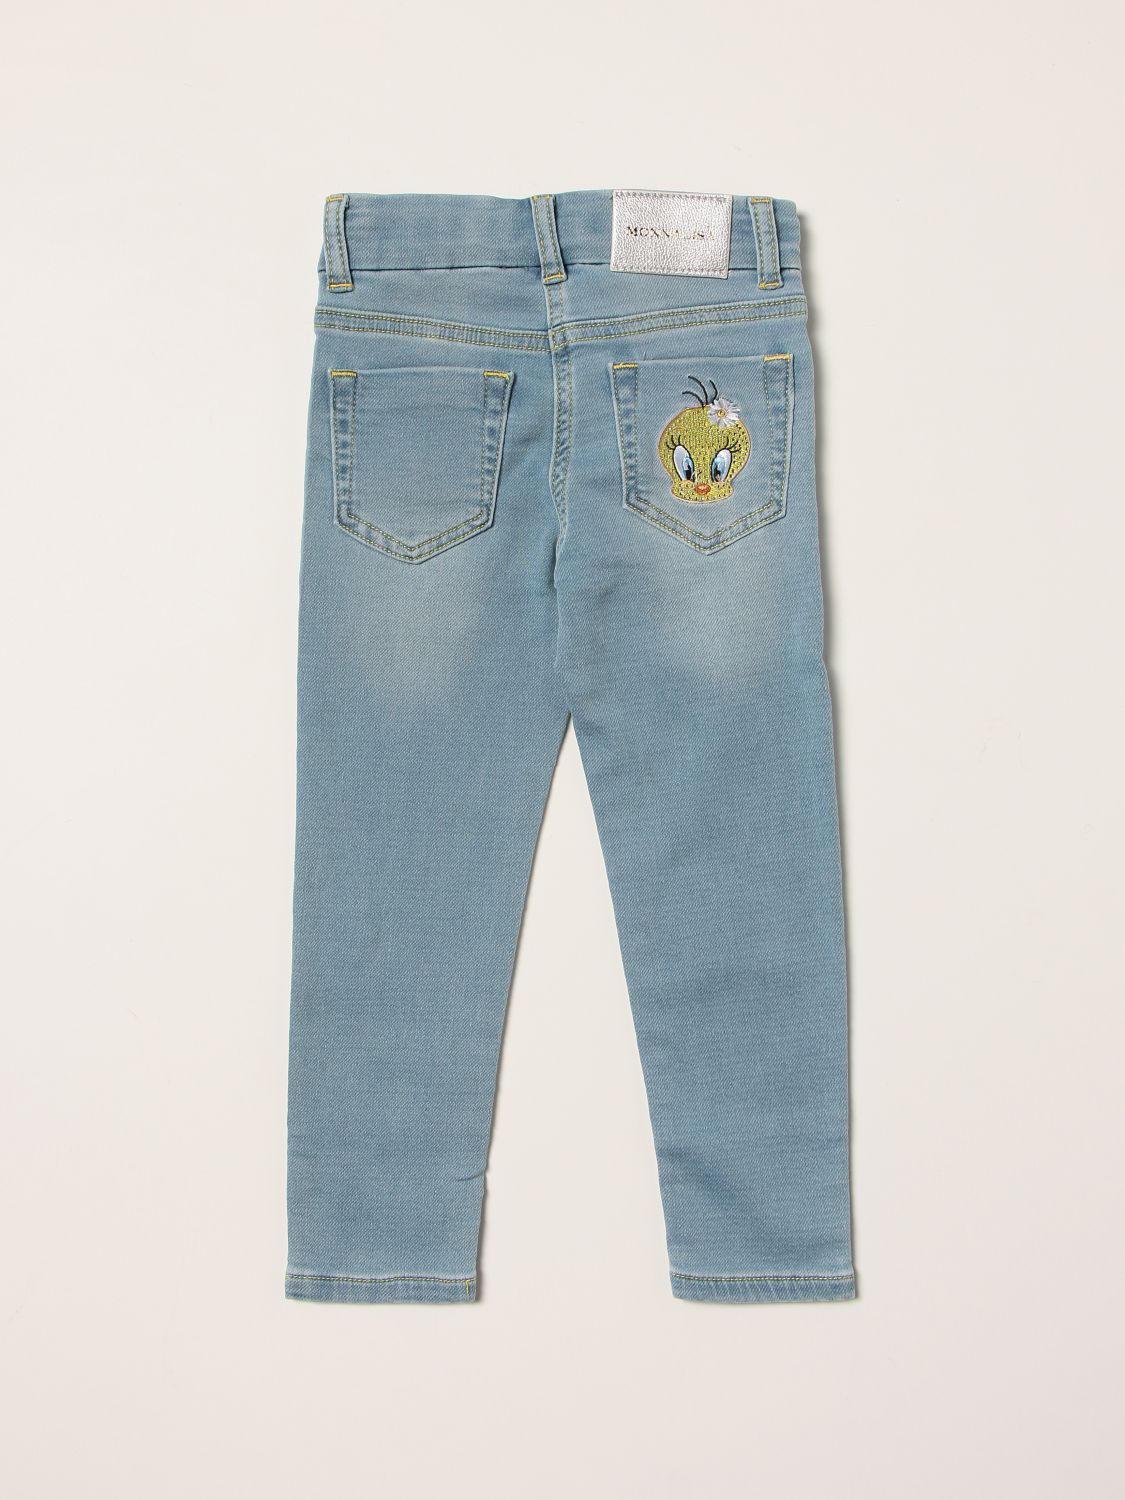 Giacca di jeans tema cartoni animati Giglio.com Bambina Abbigliamento Cappotti e giubbotti Giacche Giacche di jeans 